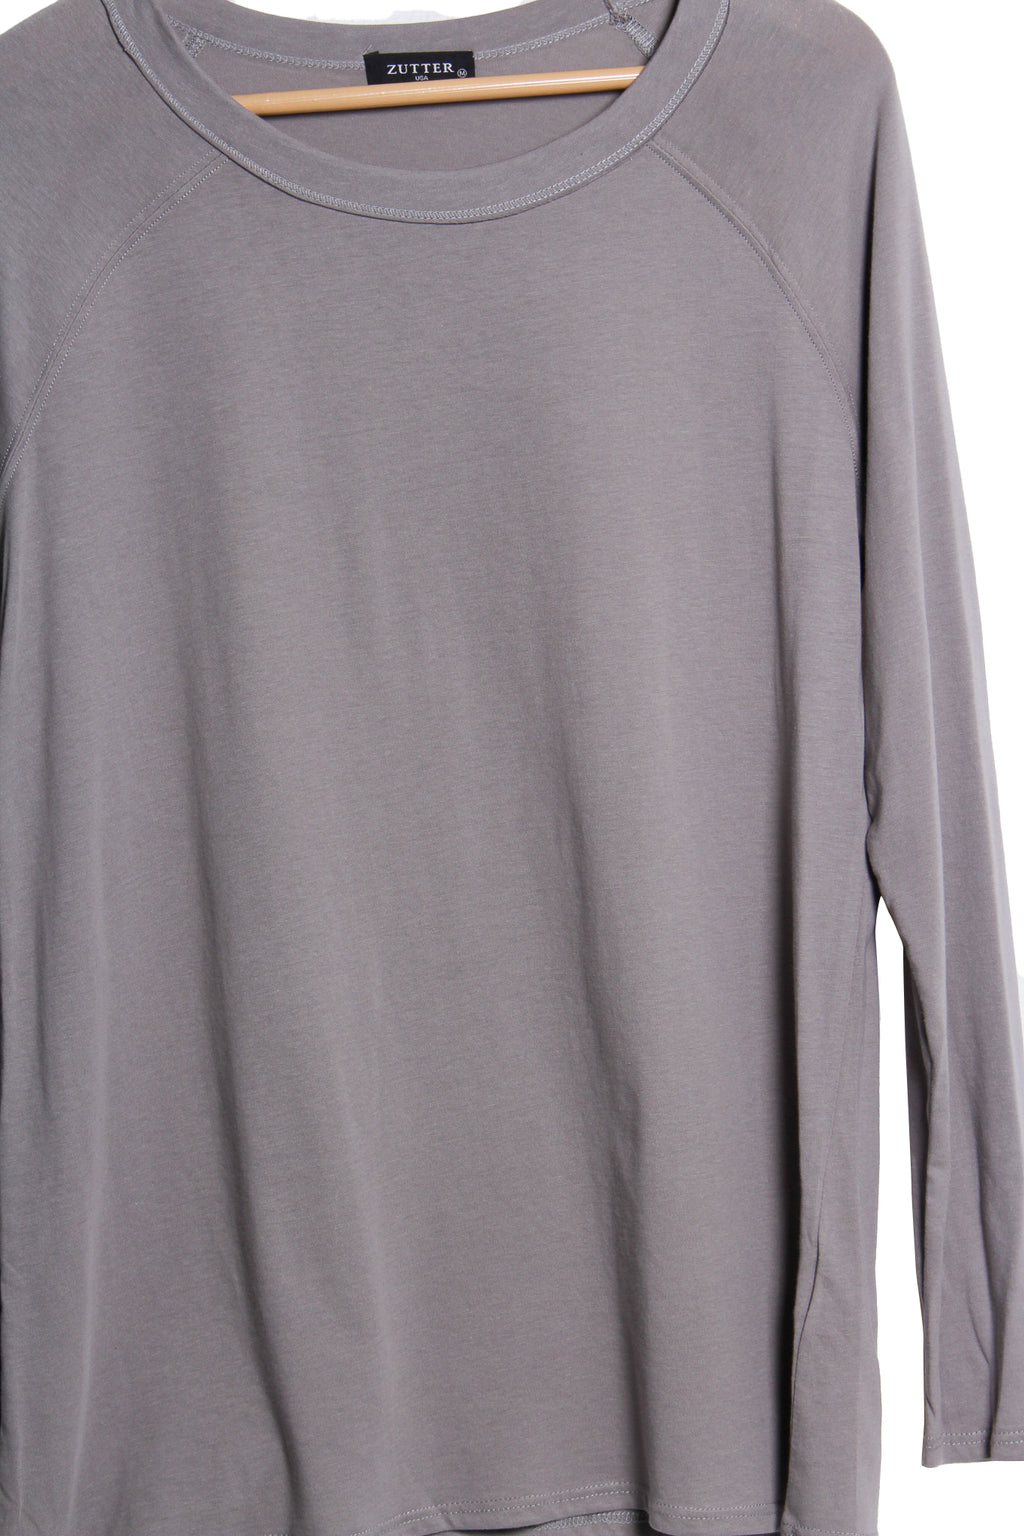 Women's Long Sleeve Scoop Neck Solid Sweatshirt